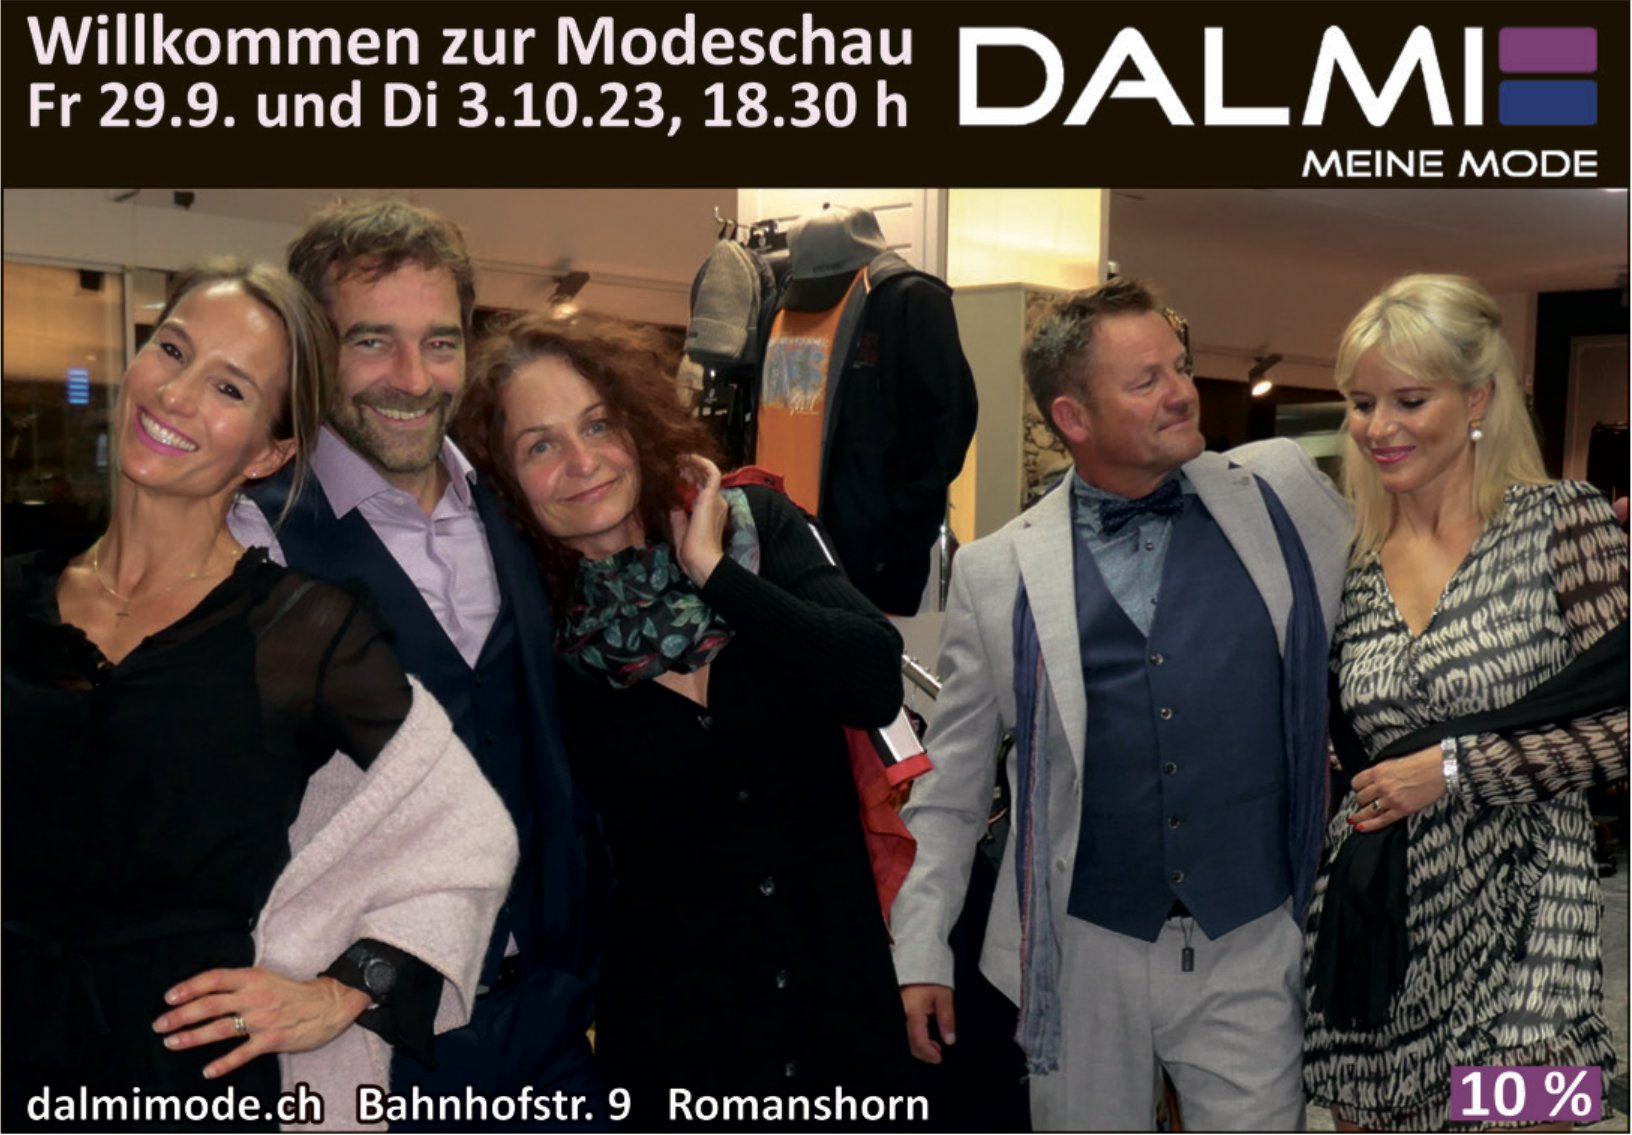 Dalmi Mode, Romanshorn - Willkommen zur Modeschau